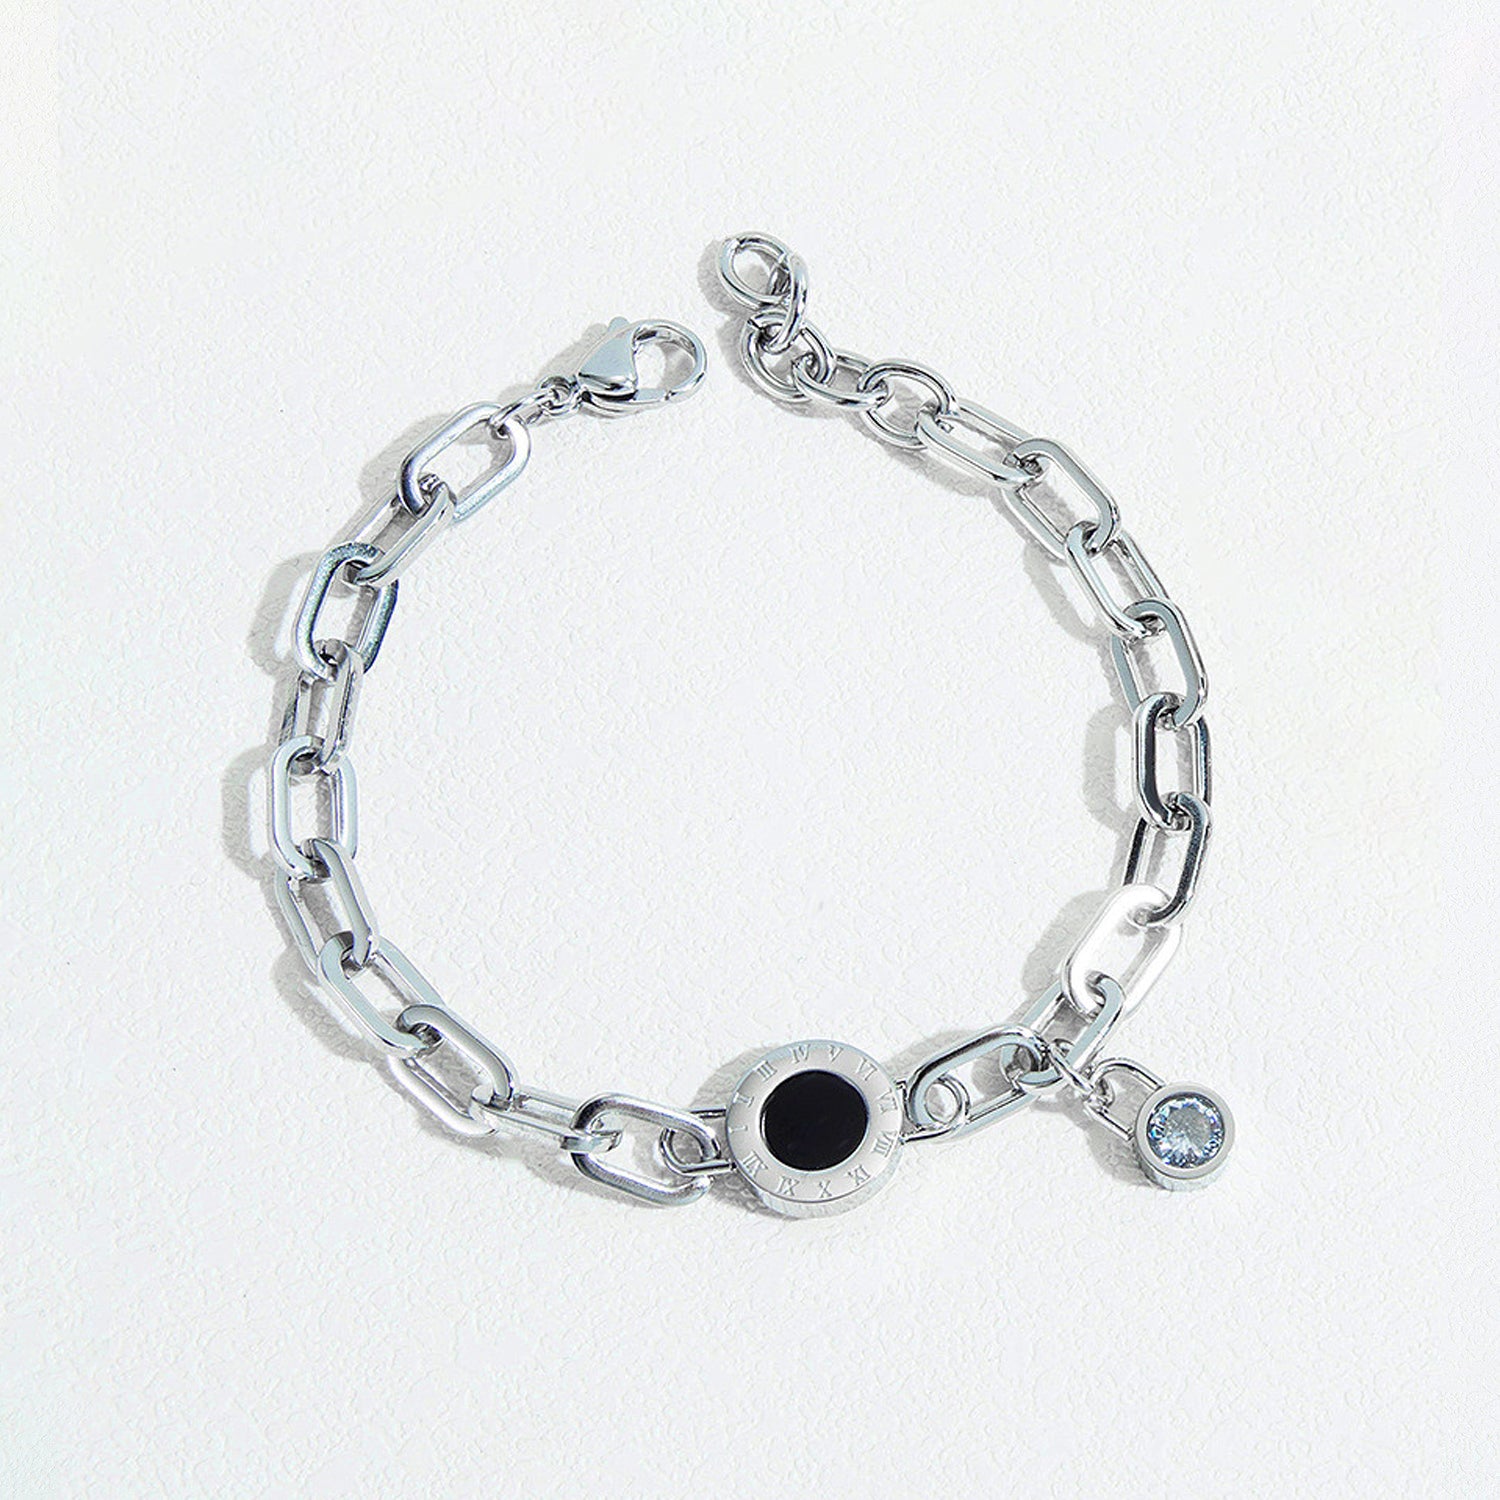 Roman Numeral Bracelet,Titanium Steel Women's Bracelet